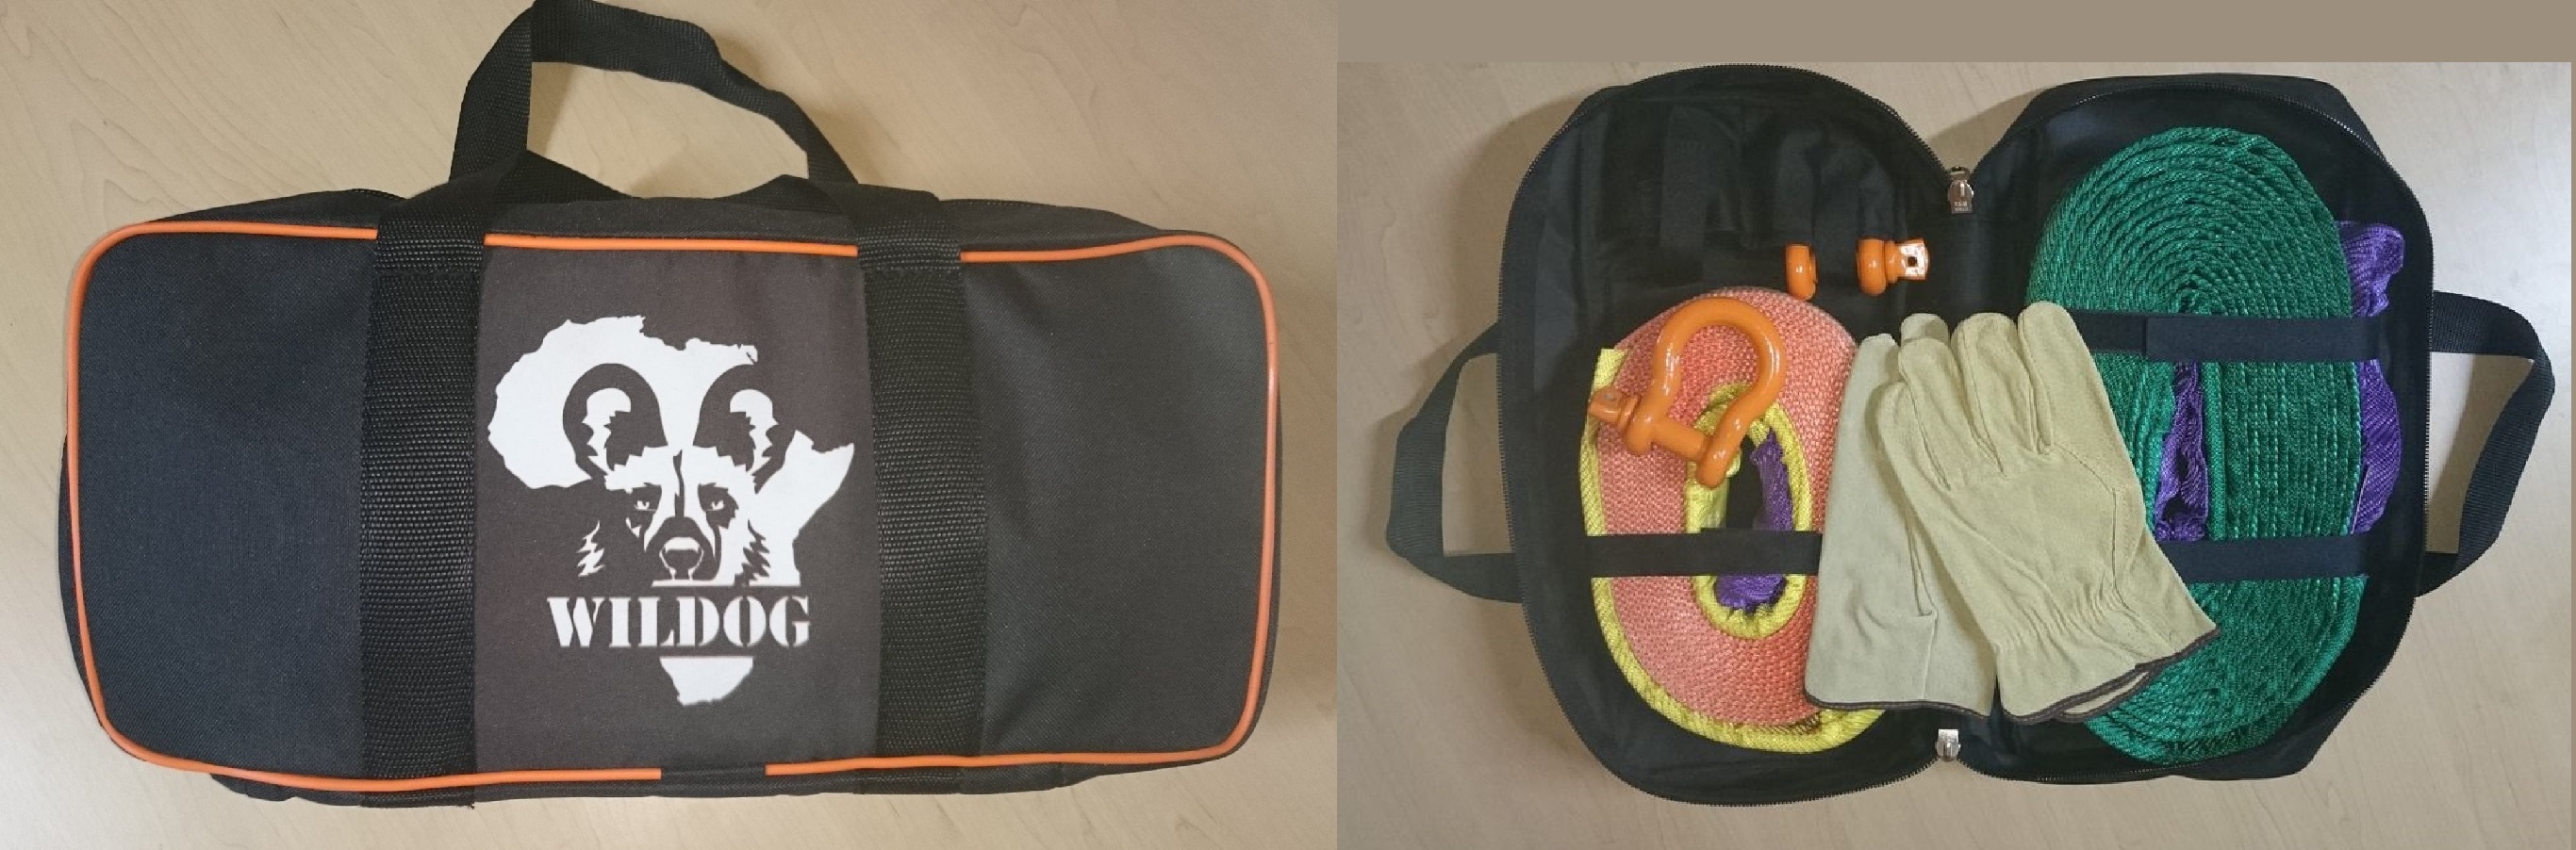 heavy-duty-recovery-bag